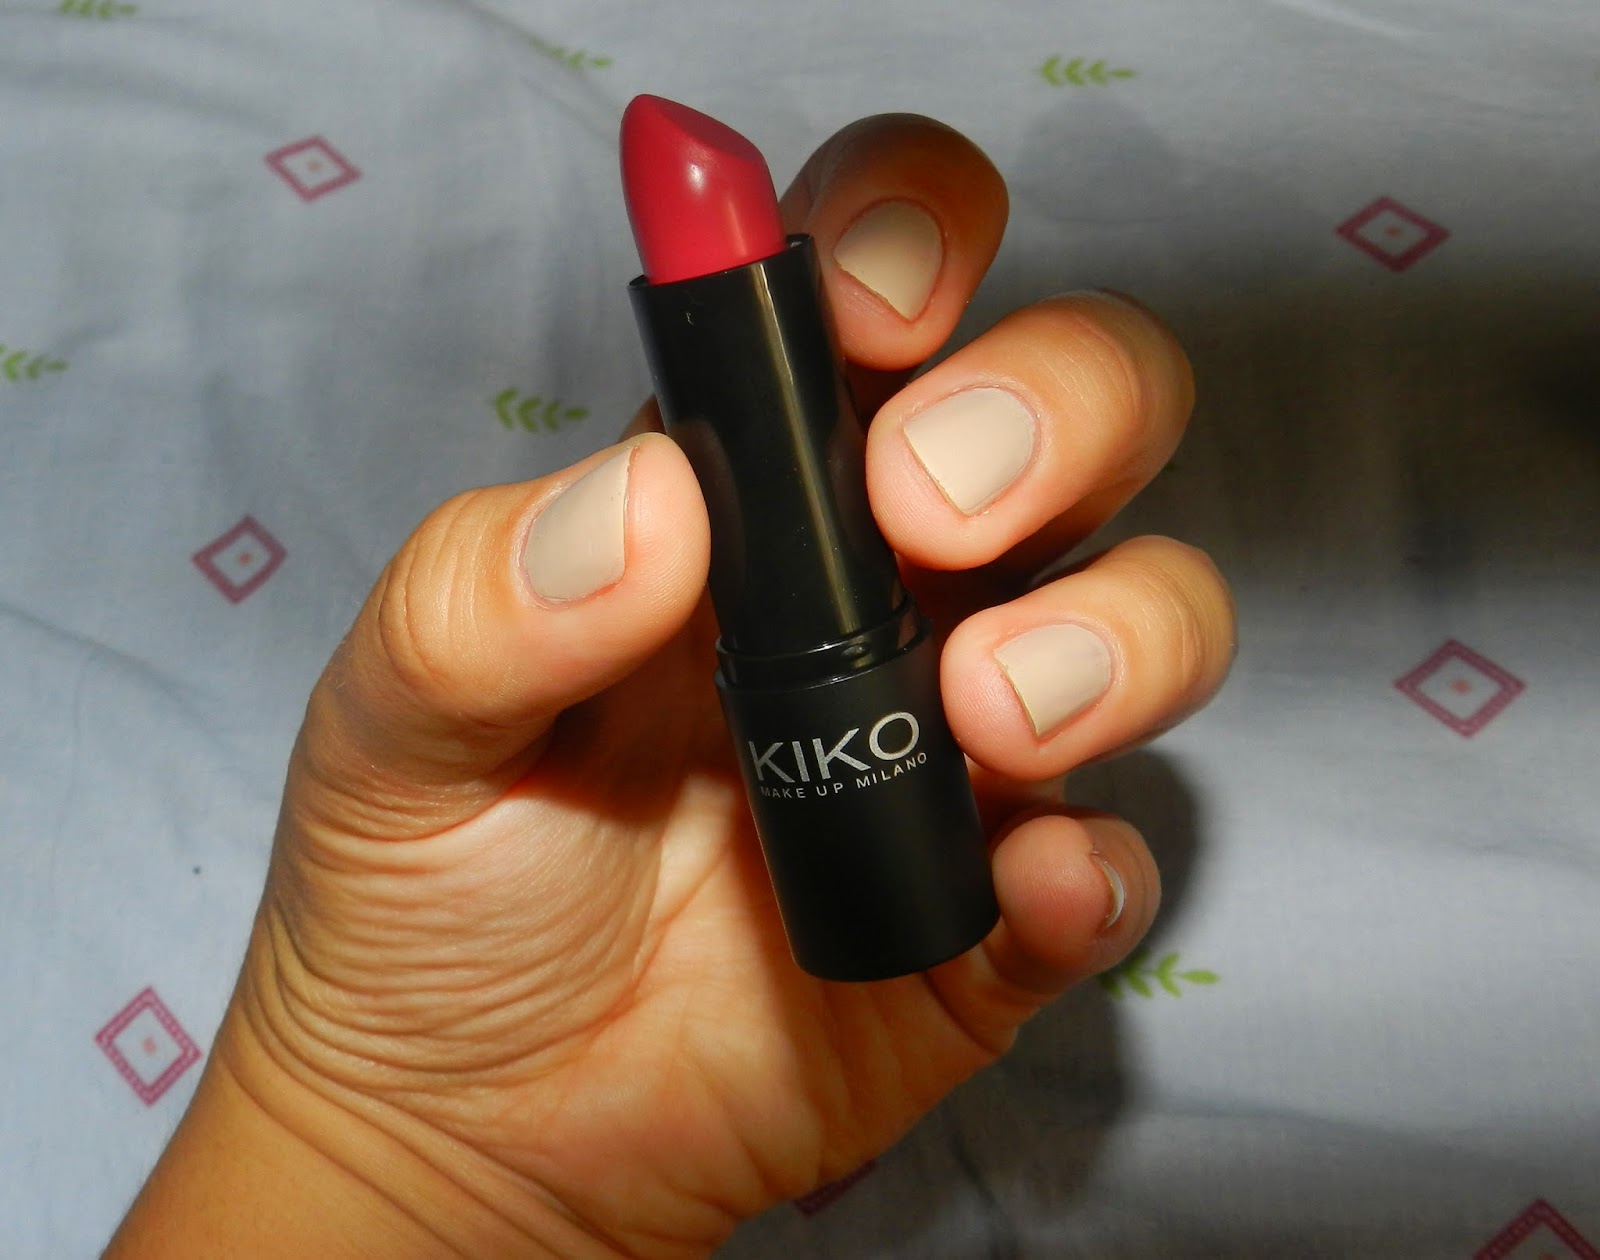 Kiki smart lipstick, kiko clic intense eyeshadow